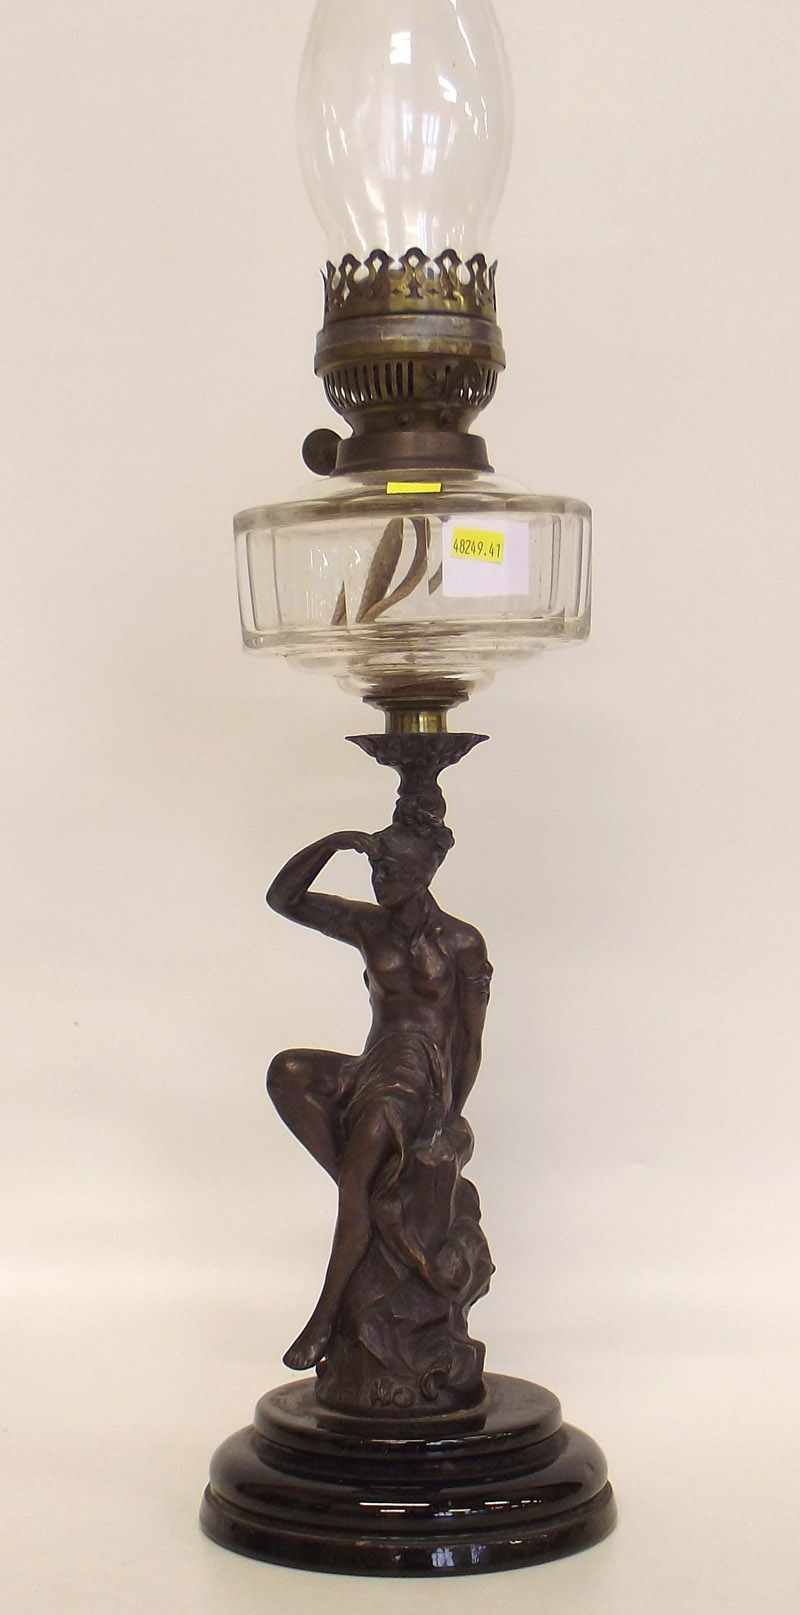 Spelter figural oil lamp.